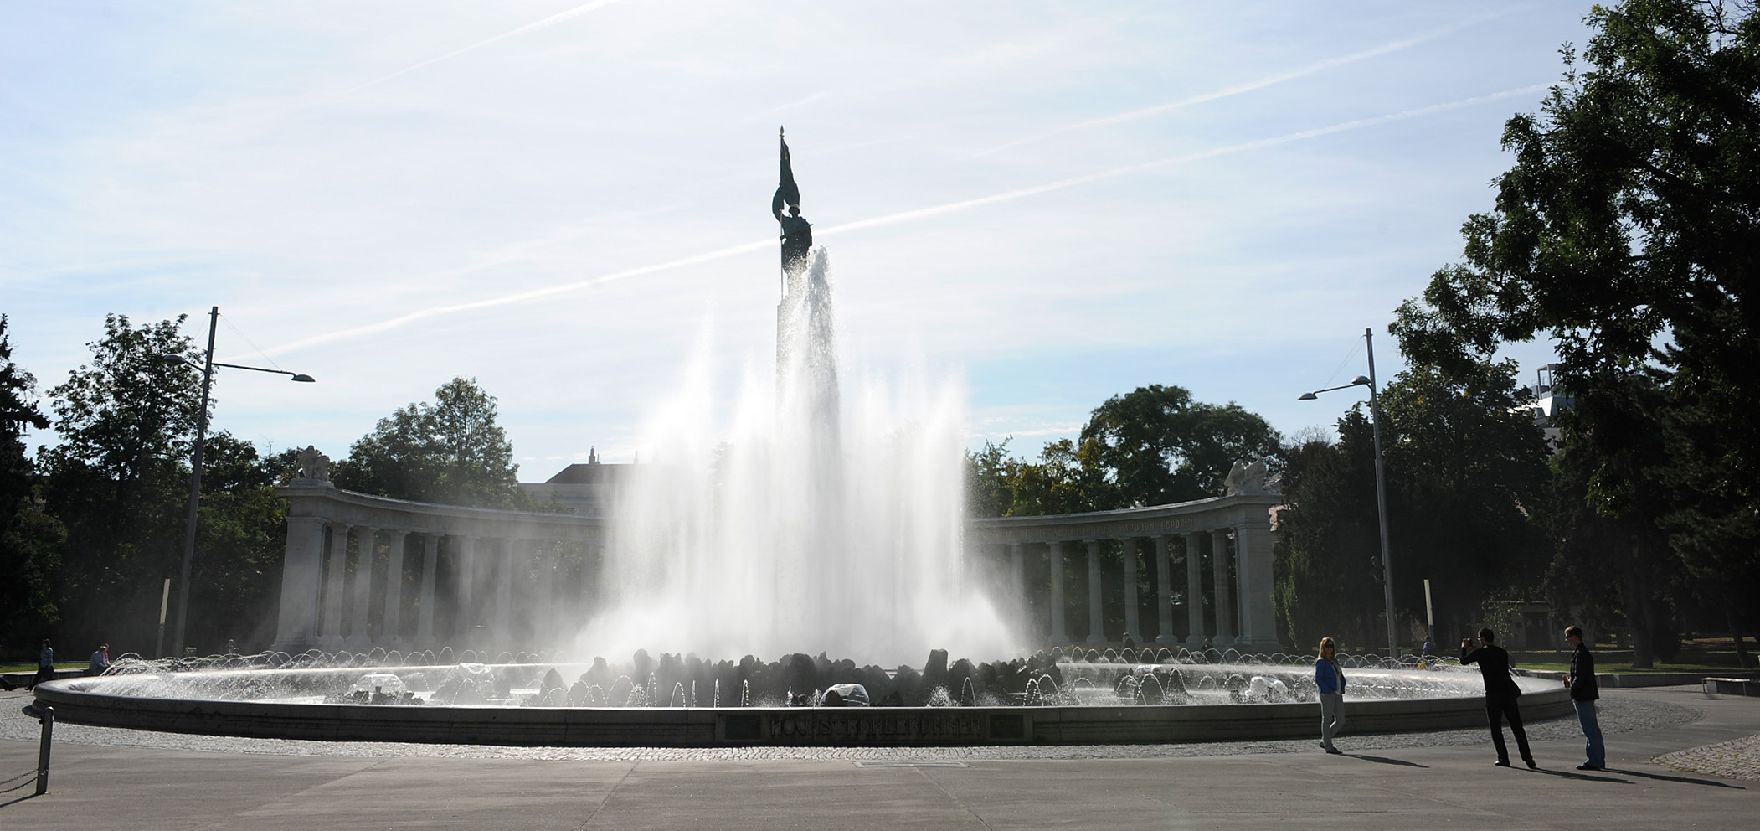 Der Hochstrahlbrunnen am Schwarzenbergplatz. Schlagworte: Brunnen, Himmel, Stadtlandschaft, Statue, Wasser, Wolken